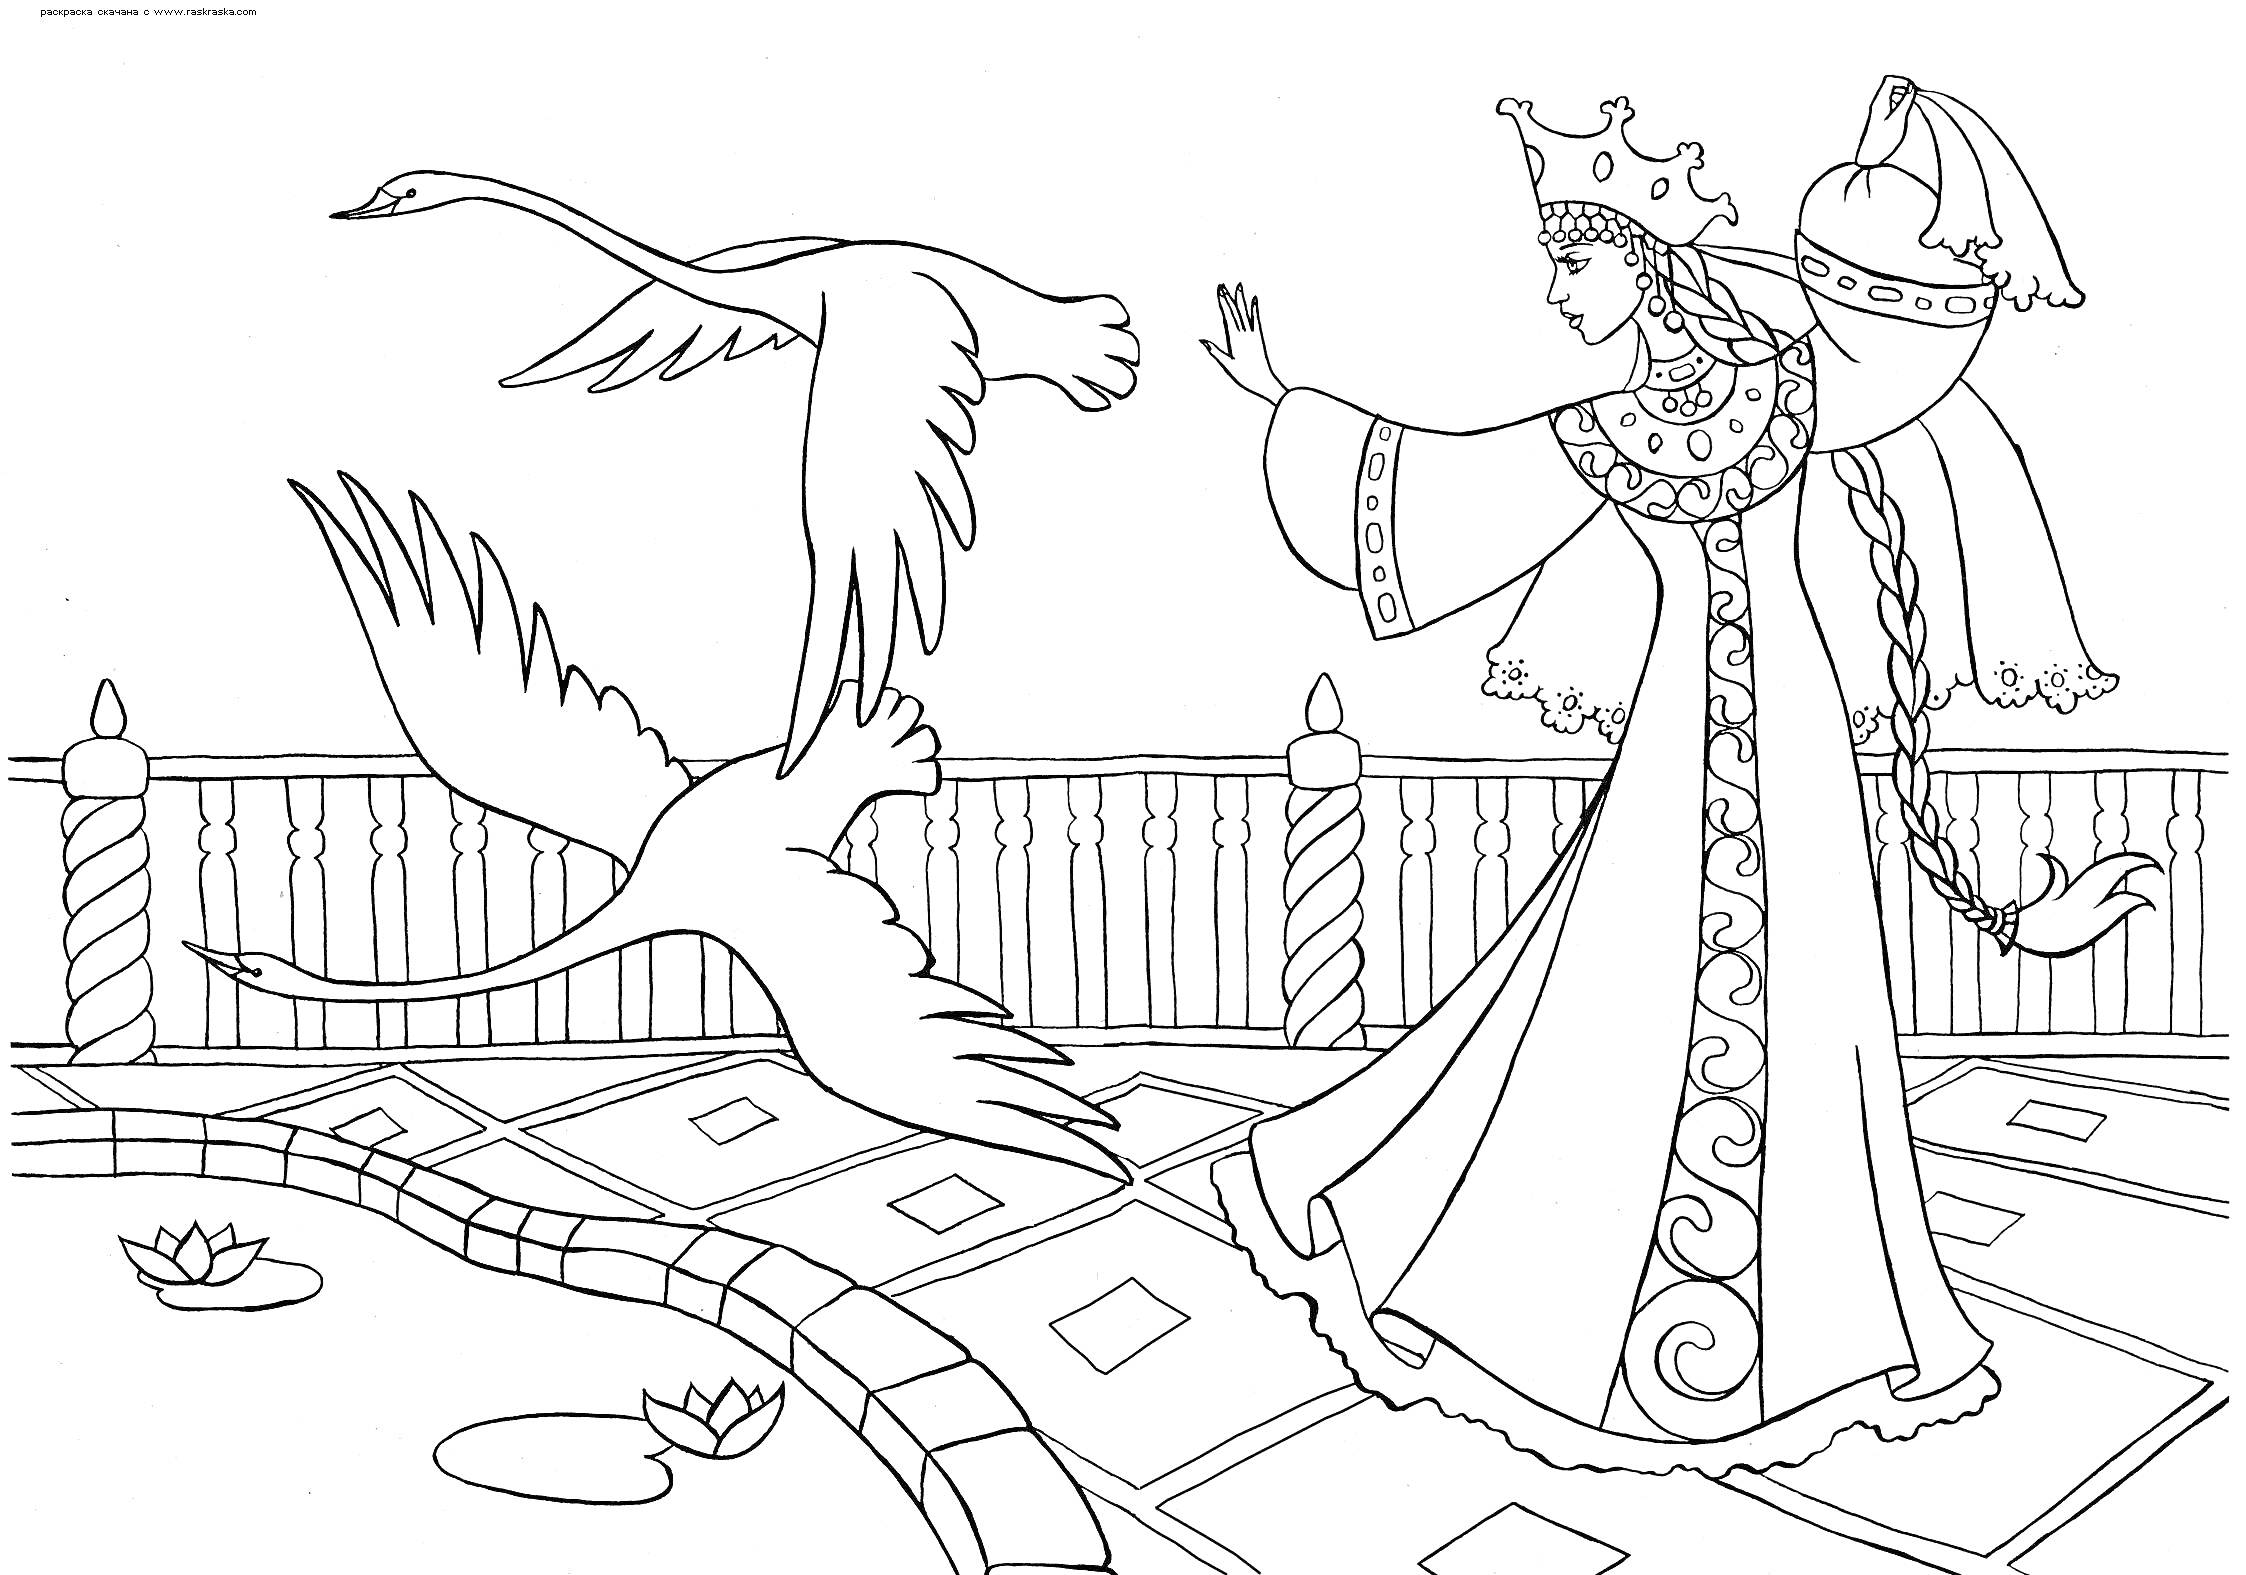 Девушка в русском народном костюме с косой и короной на голове, машущая рукой в направлении летящих лебедей у пруда с кувшинками, на фоне ограждения.